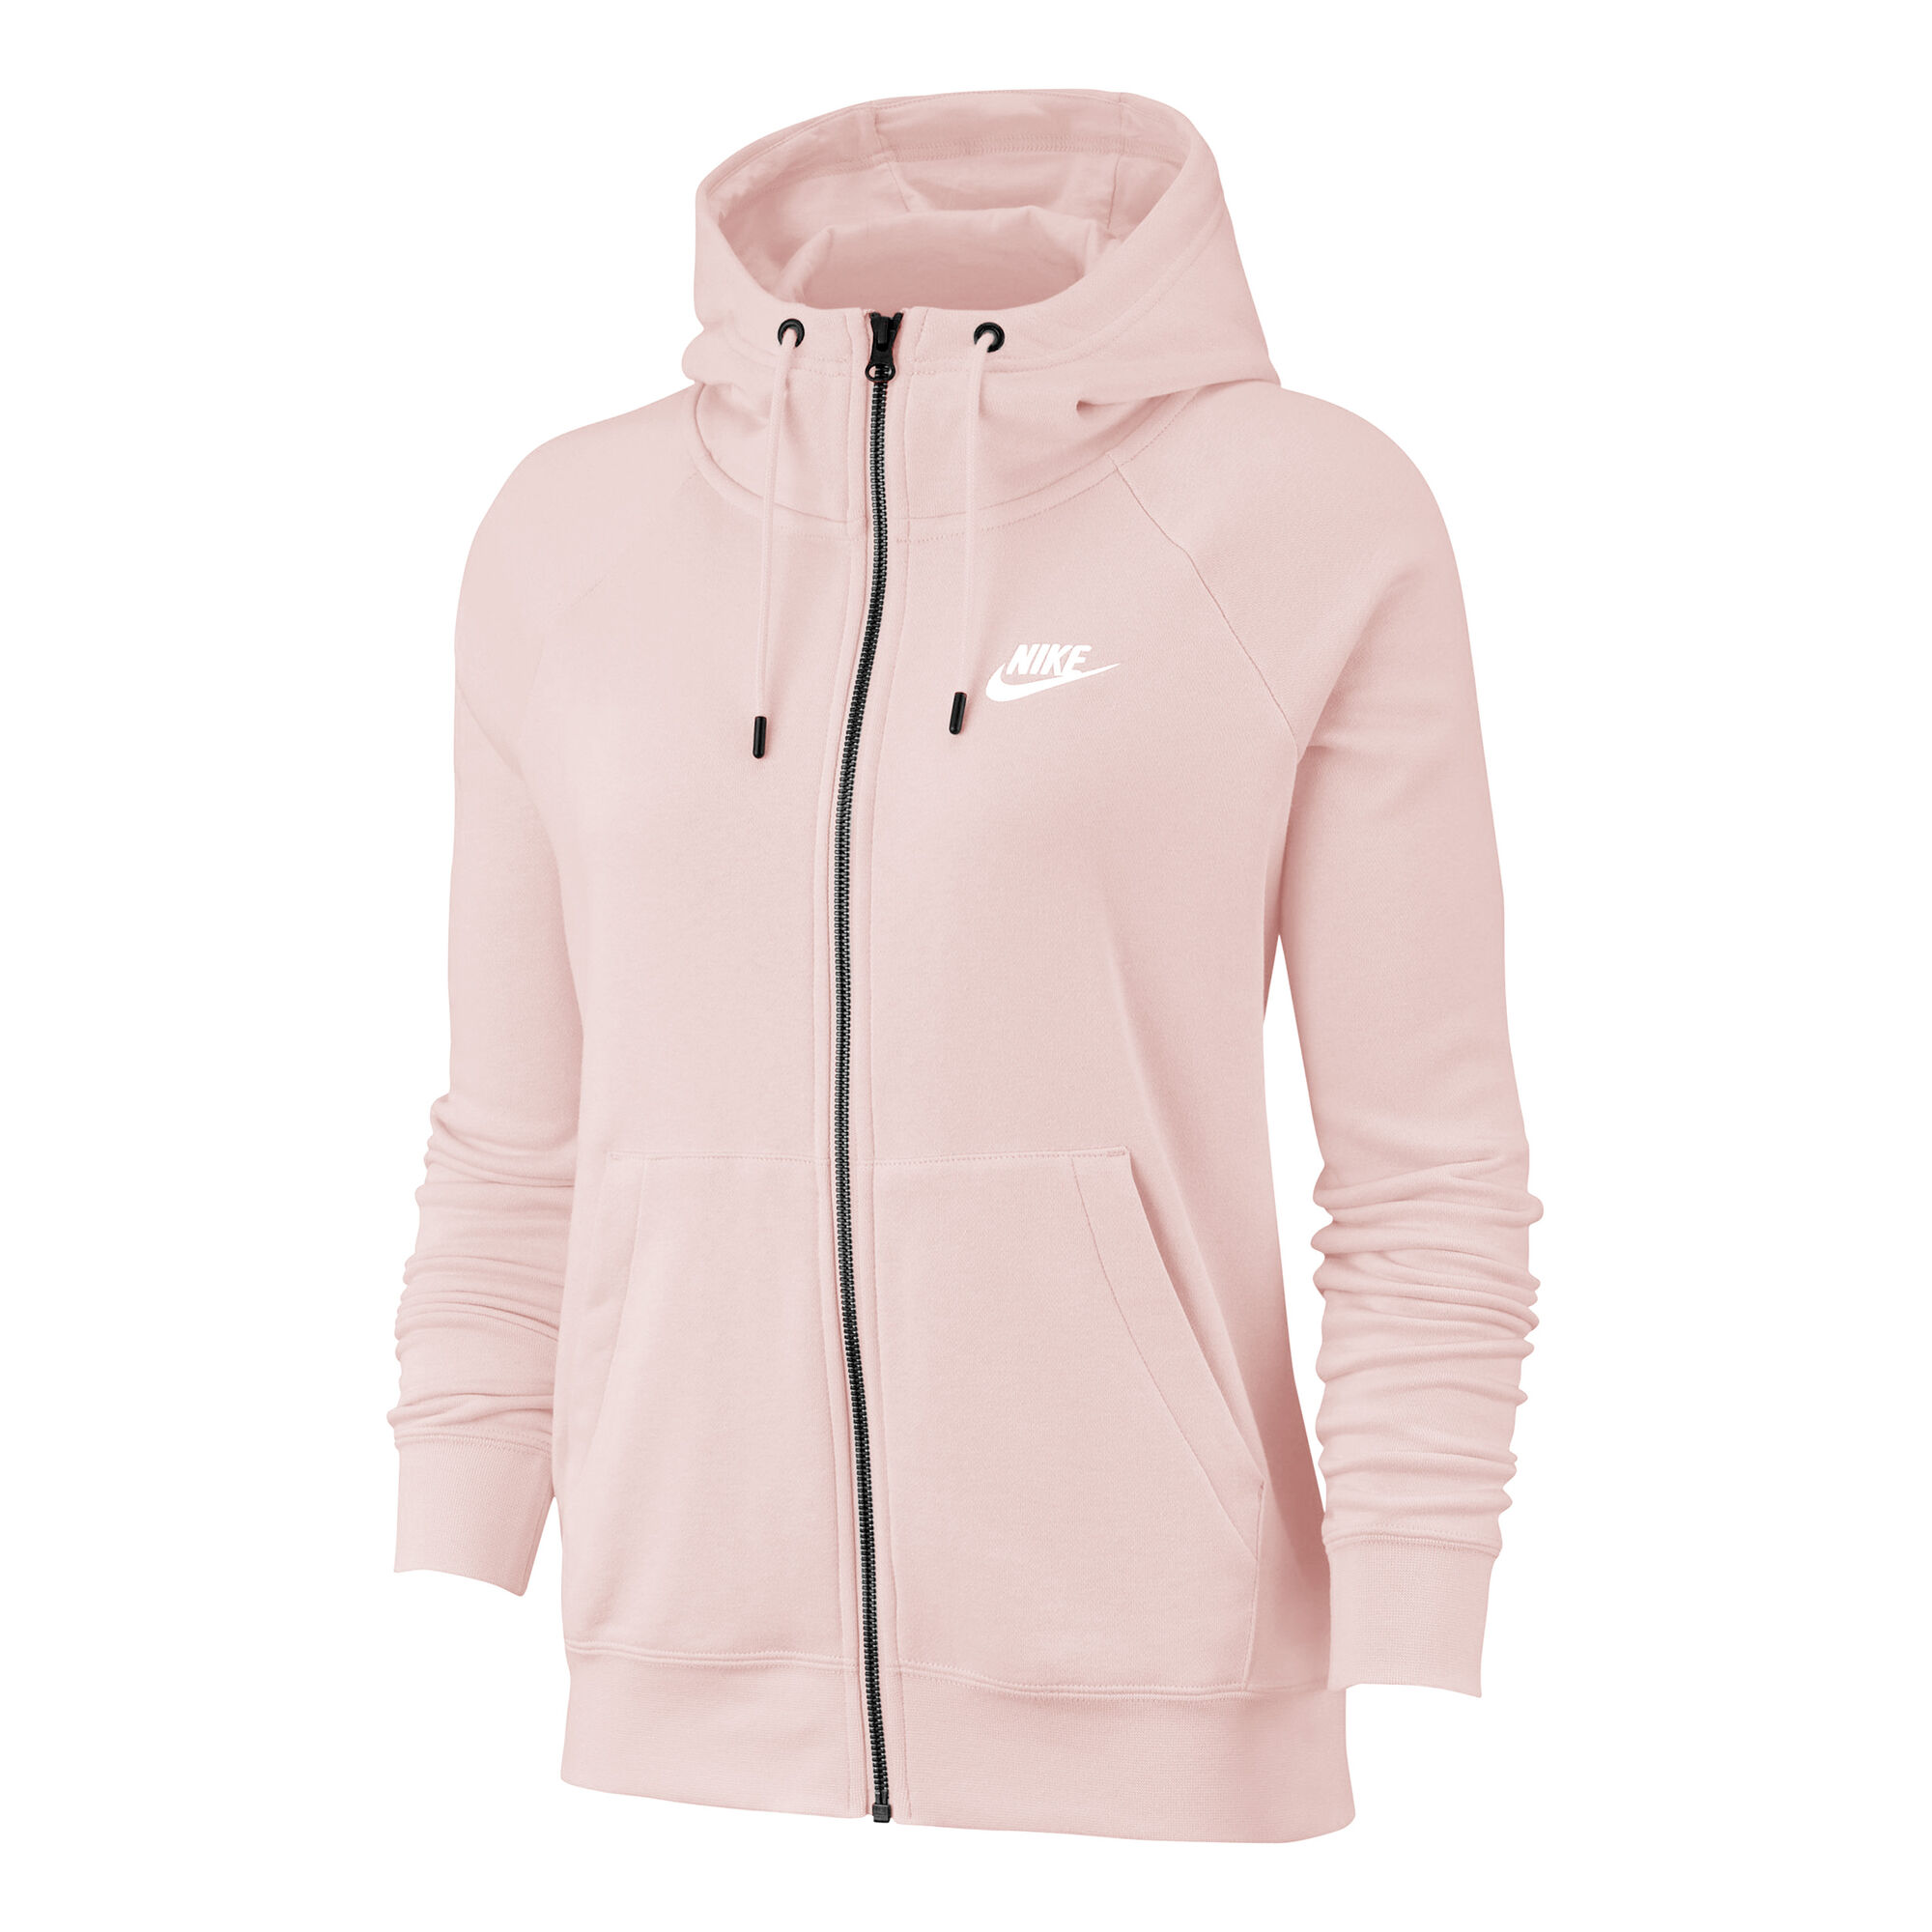 Nike Sportswear Gilet En Coton Femmes - Rosé acheter en ligne | Tennis-Point